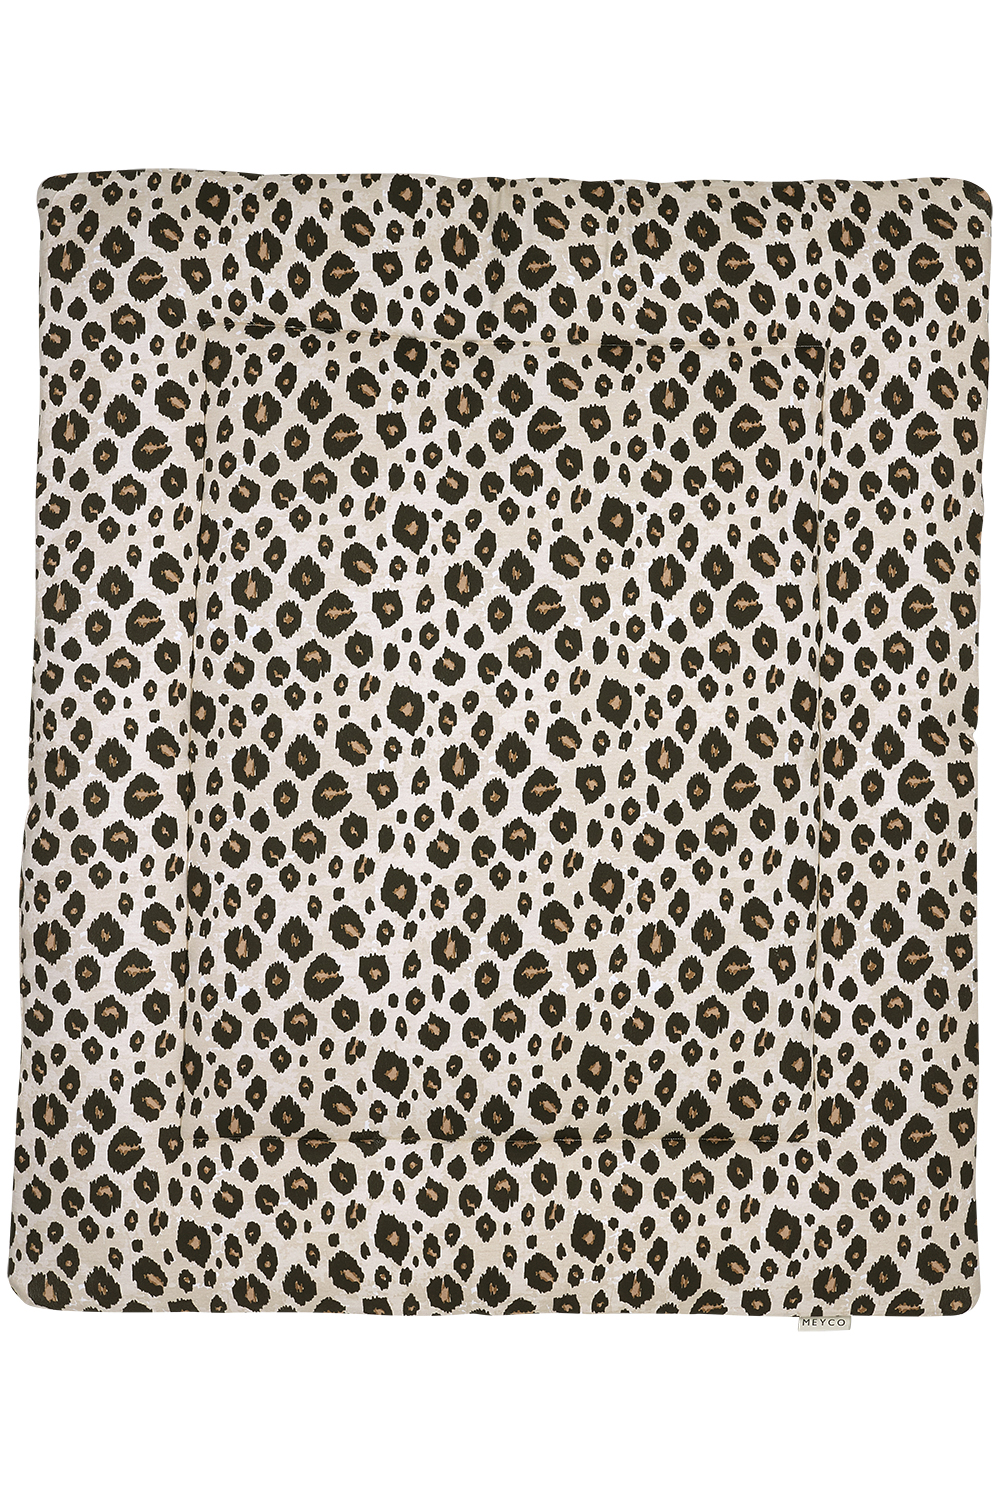 Laufgittereinlage Leopard - sand melange - 80x100cm